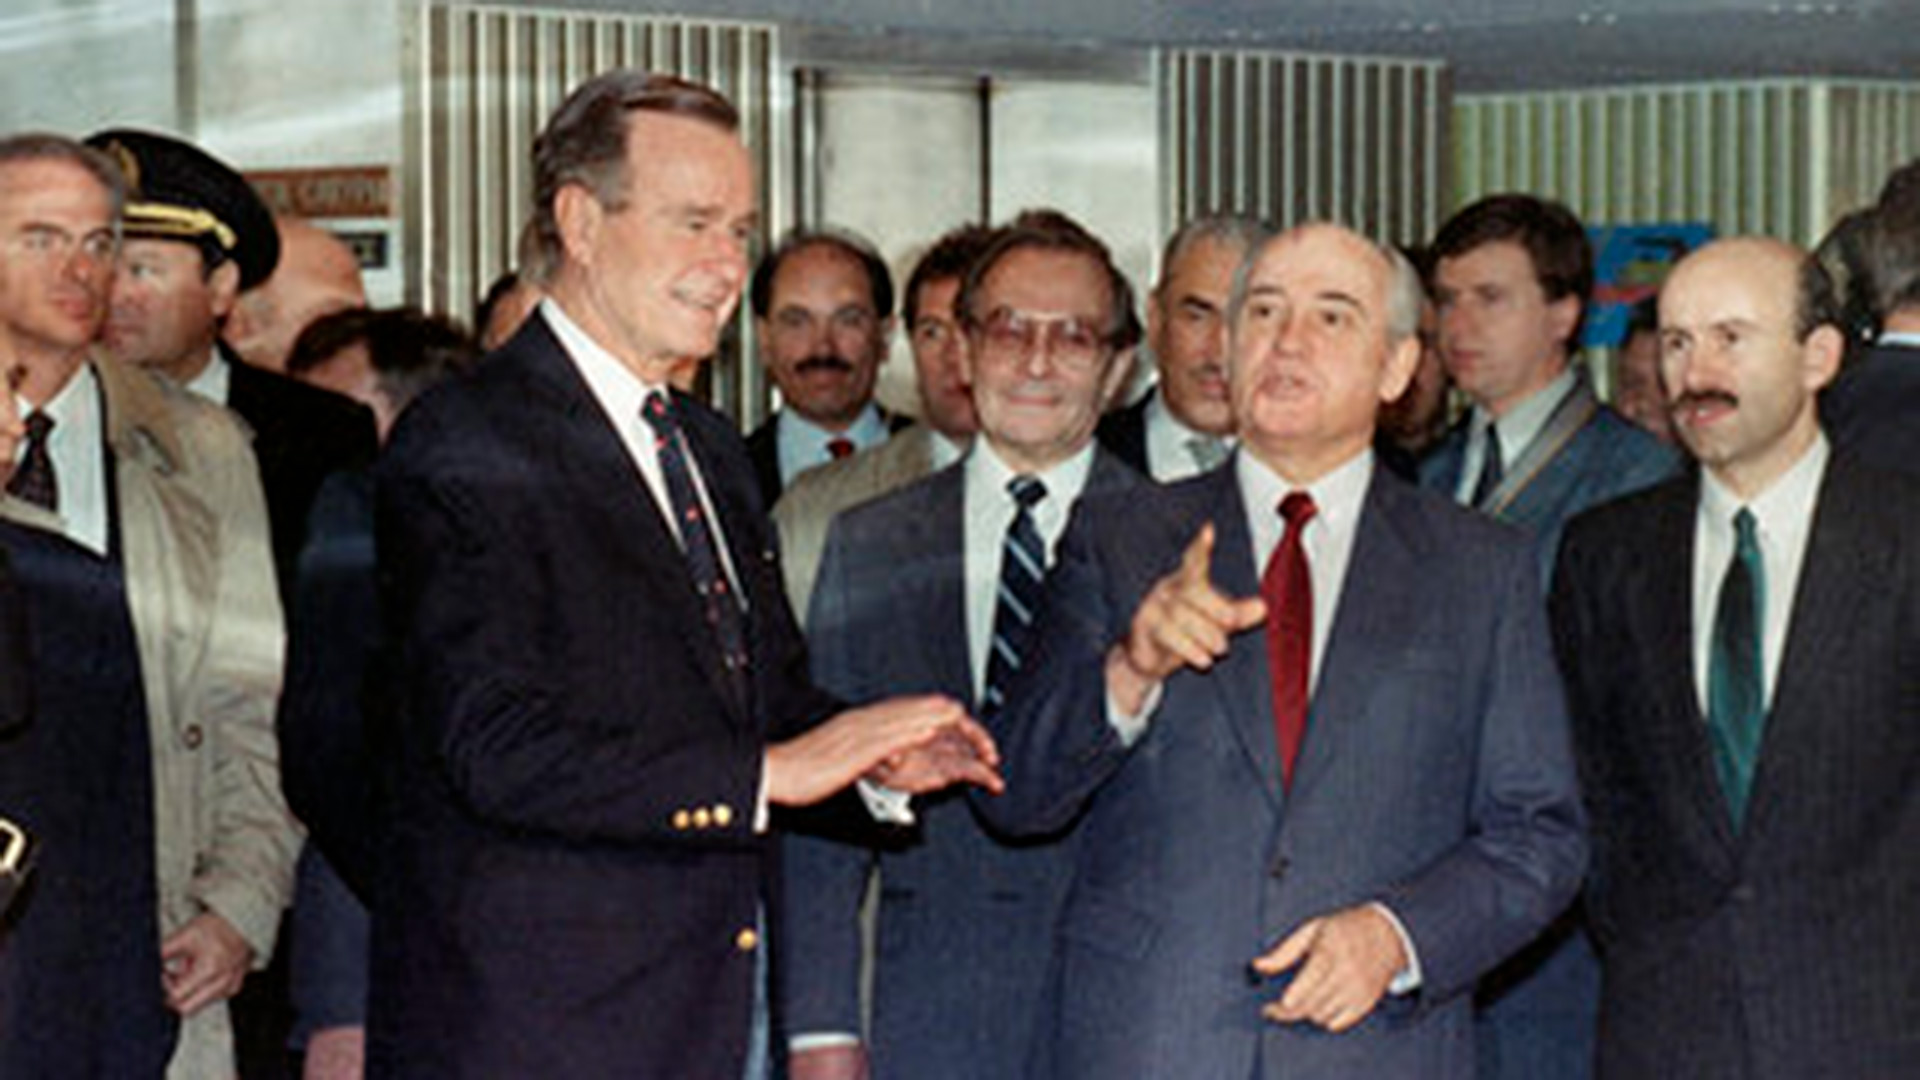 El presidente de los Estados Unidos, George H. Bush, y el presidente de la Unión Soviética, Mikhail Gorbachev el 3 de diciembre de 1989 en Malta (AP Photo/Ron Edmonds)